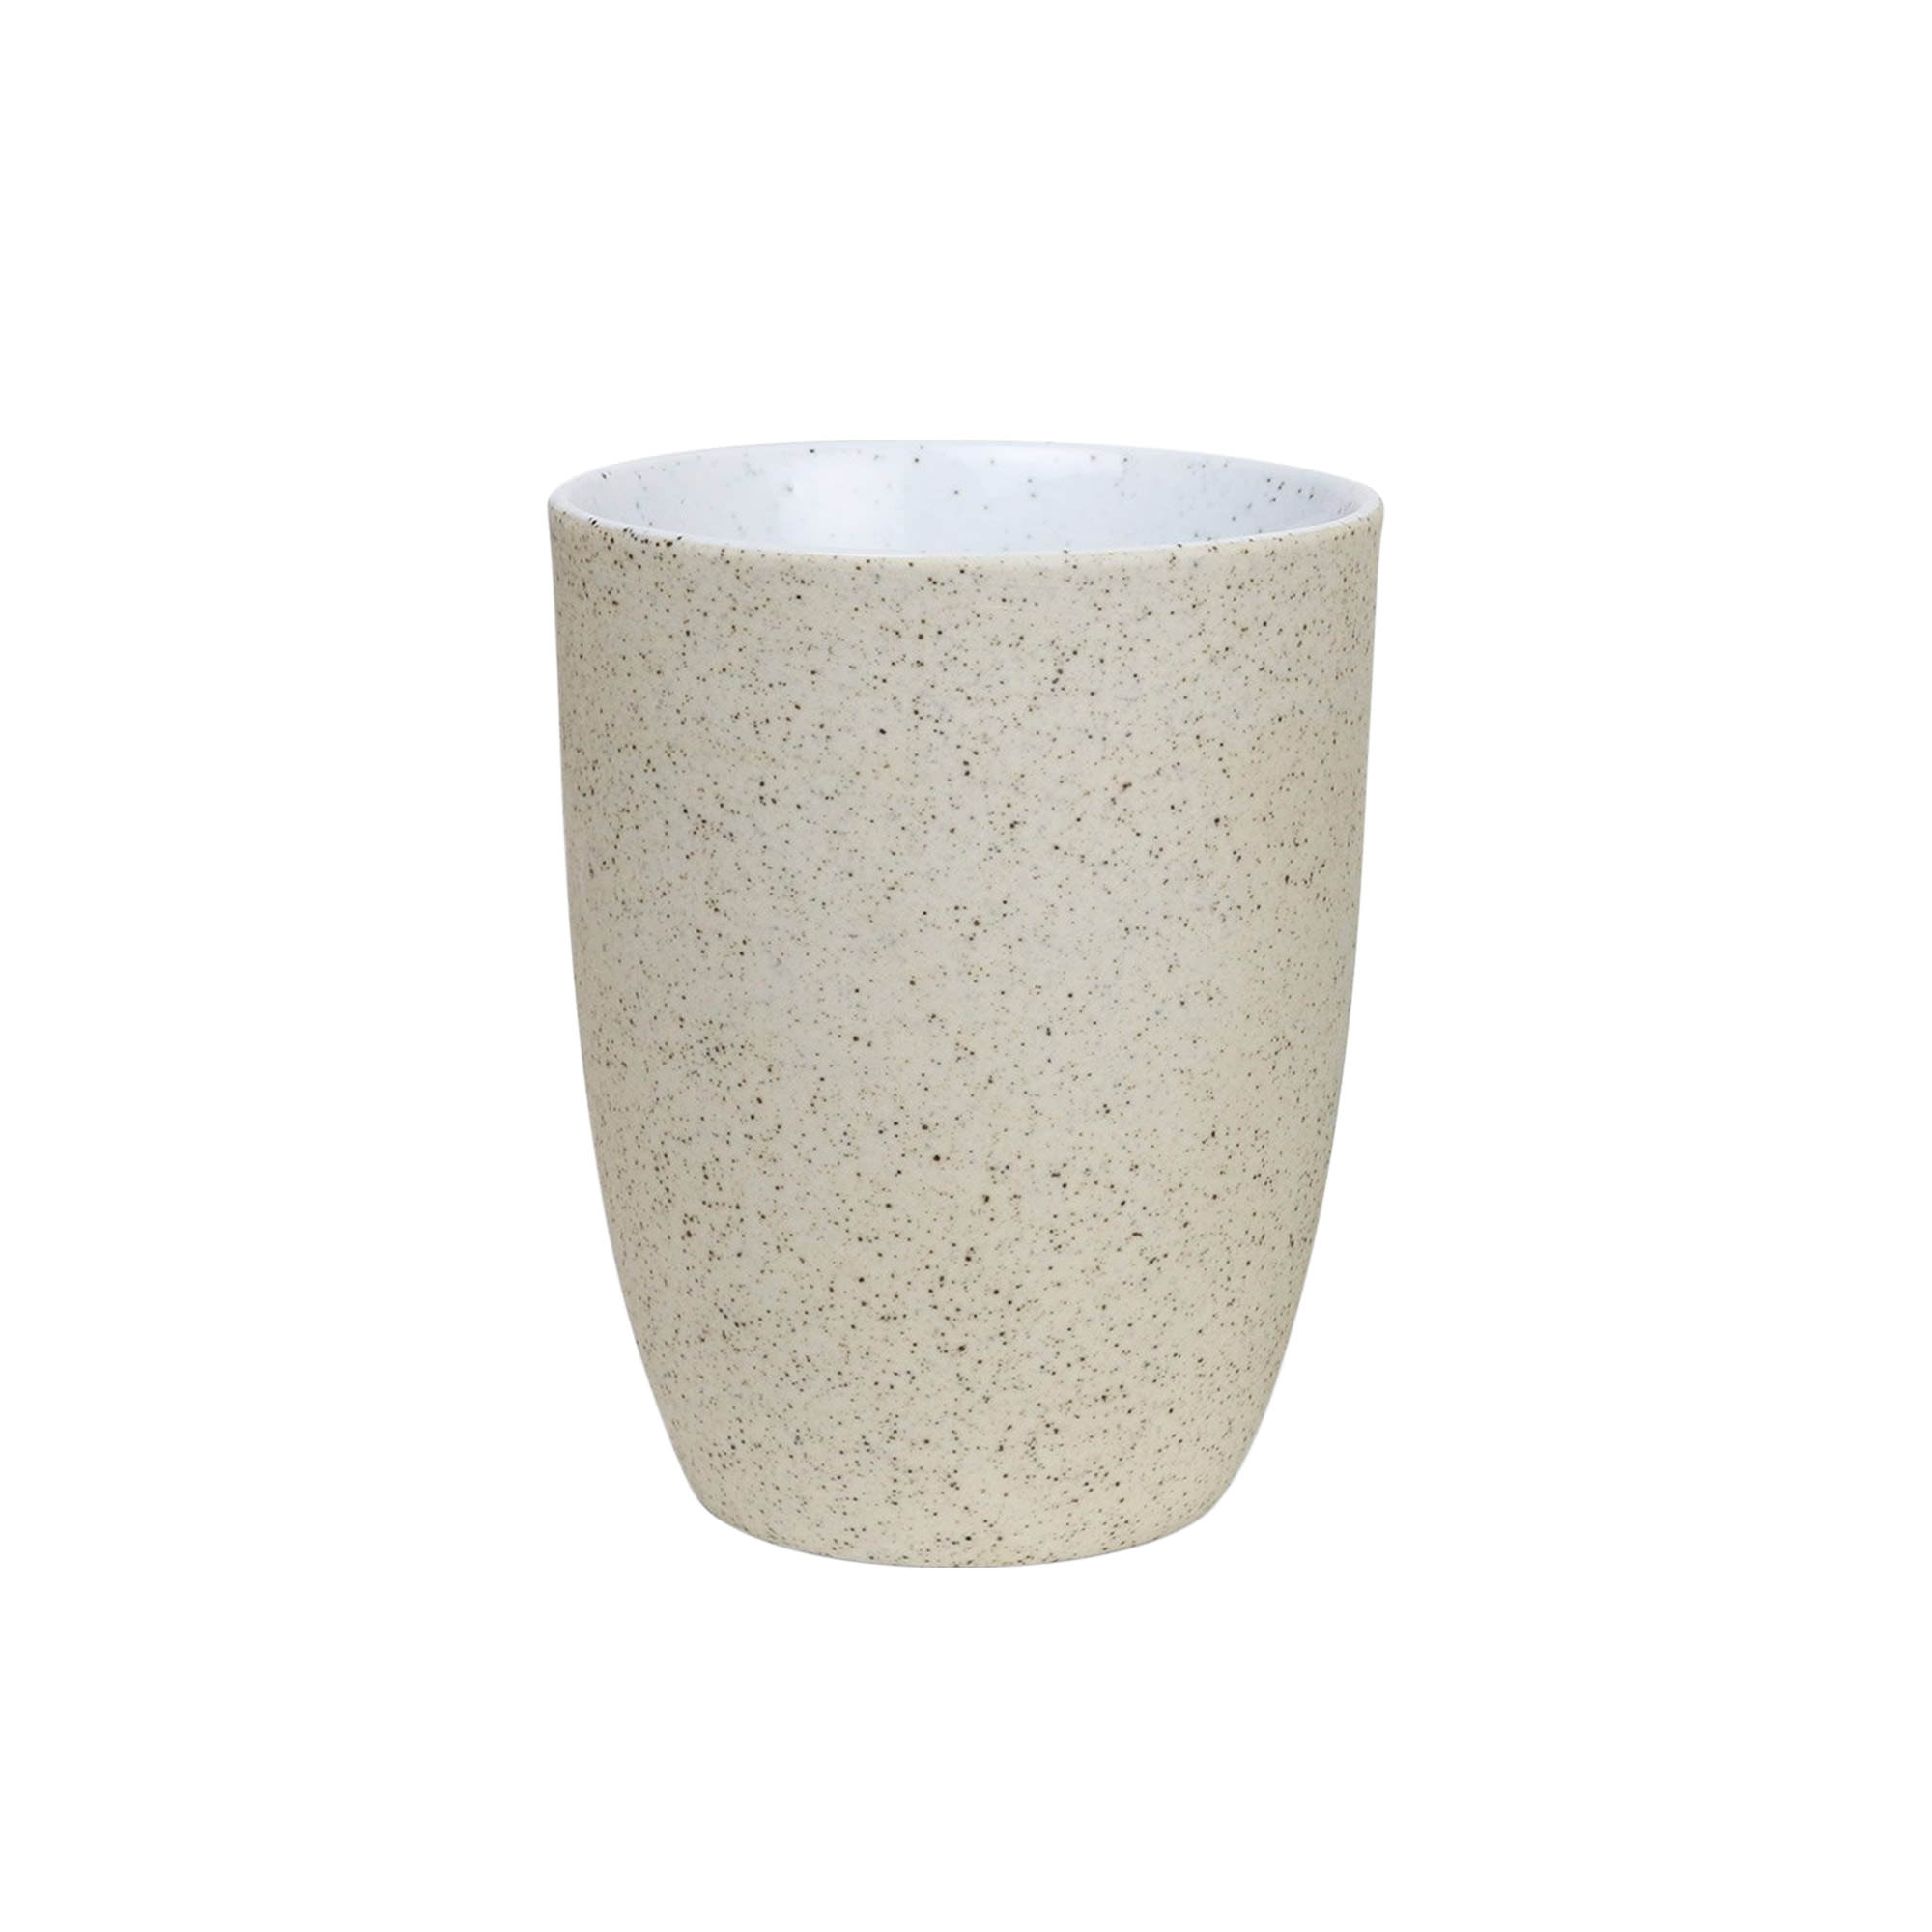 Robert Gordon Granite Latte Cup 330ml Set of 2 White Image 2